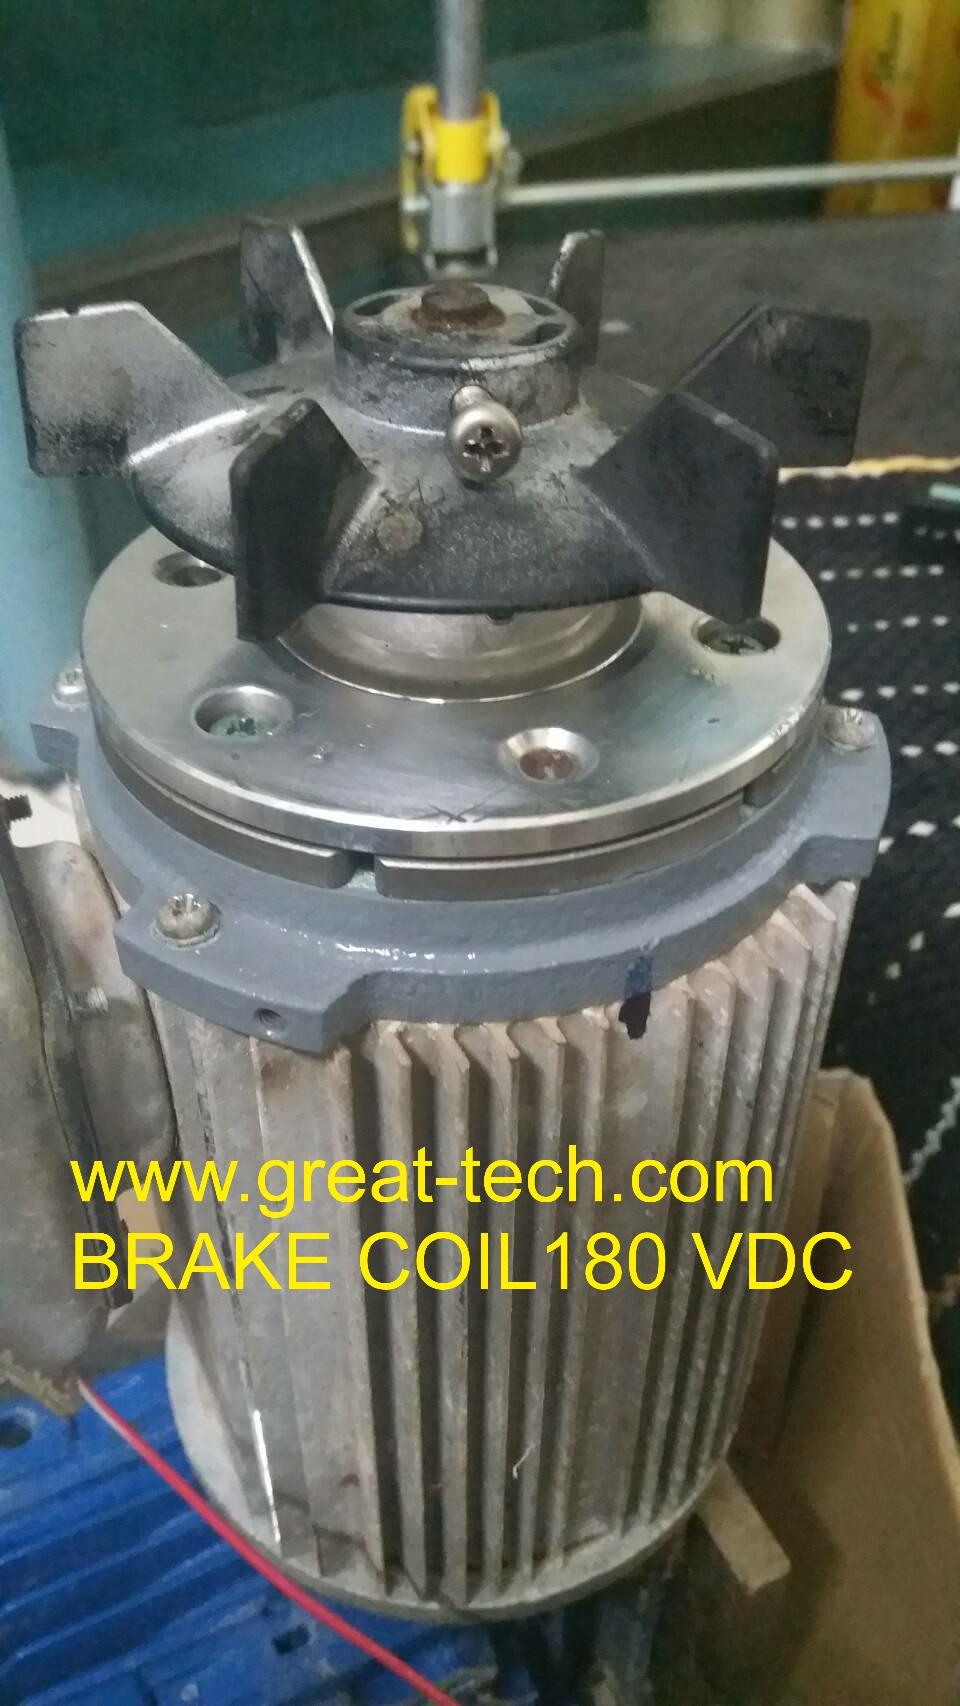 เบรคเรคติไฟเออร์ สําหรับ มอเตอร์เบรค,#เบรคเรคติไฟเออร์#brakerectifier#เรคติไฟเออร์#rectifier,EMCO Lenze,Machinery and Process Equipment/Brakes and Clutches/Brake